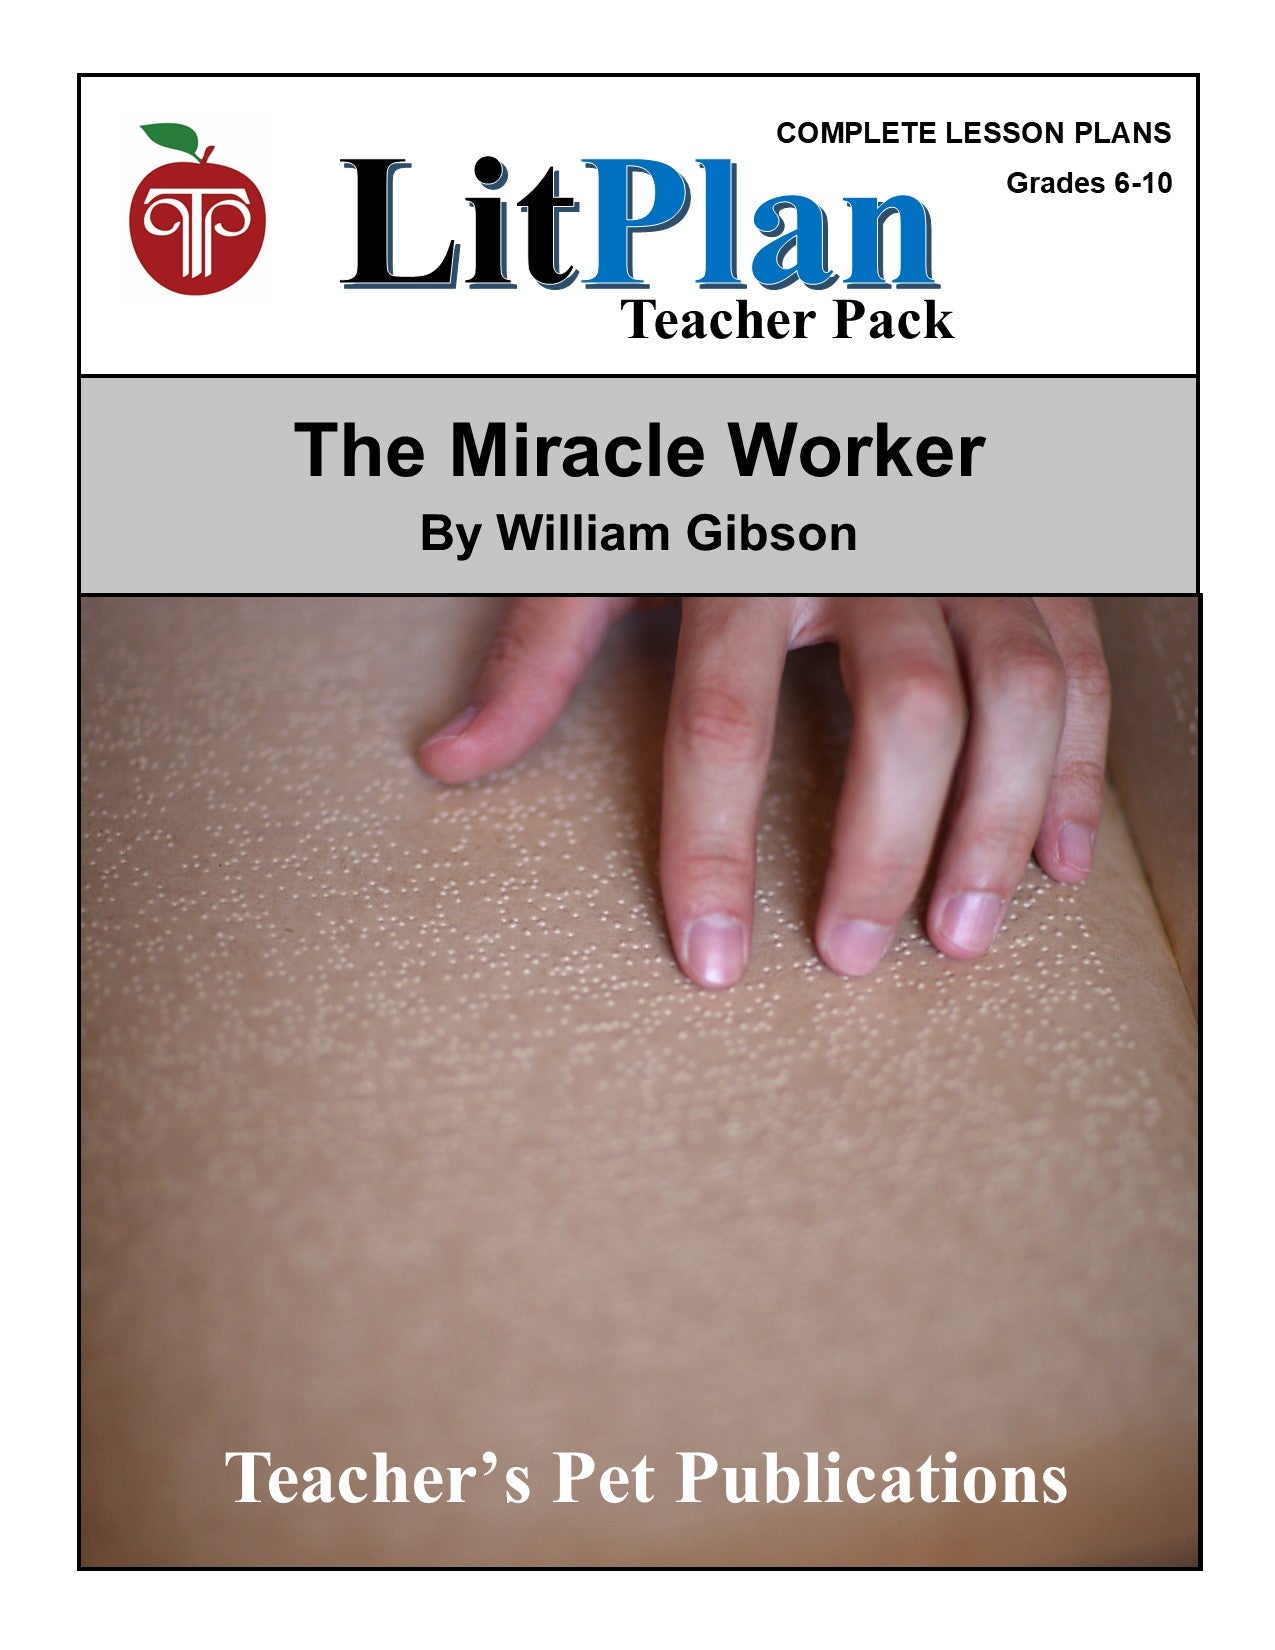 The Miracle Worker: LitPlan Teacher Pack Grades 6-10